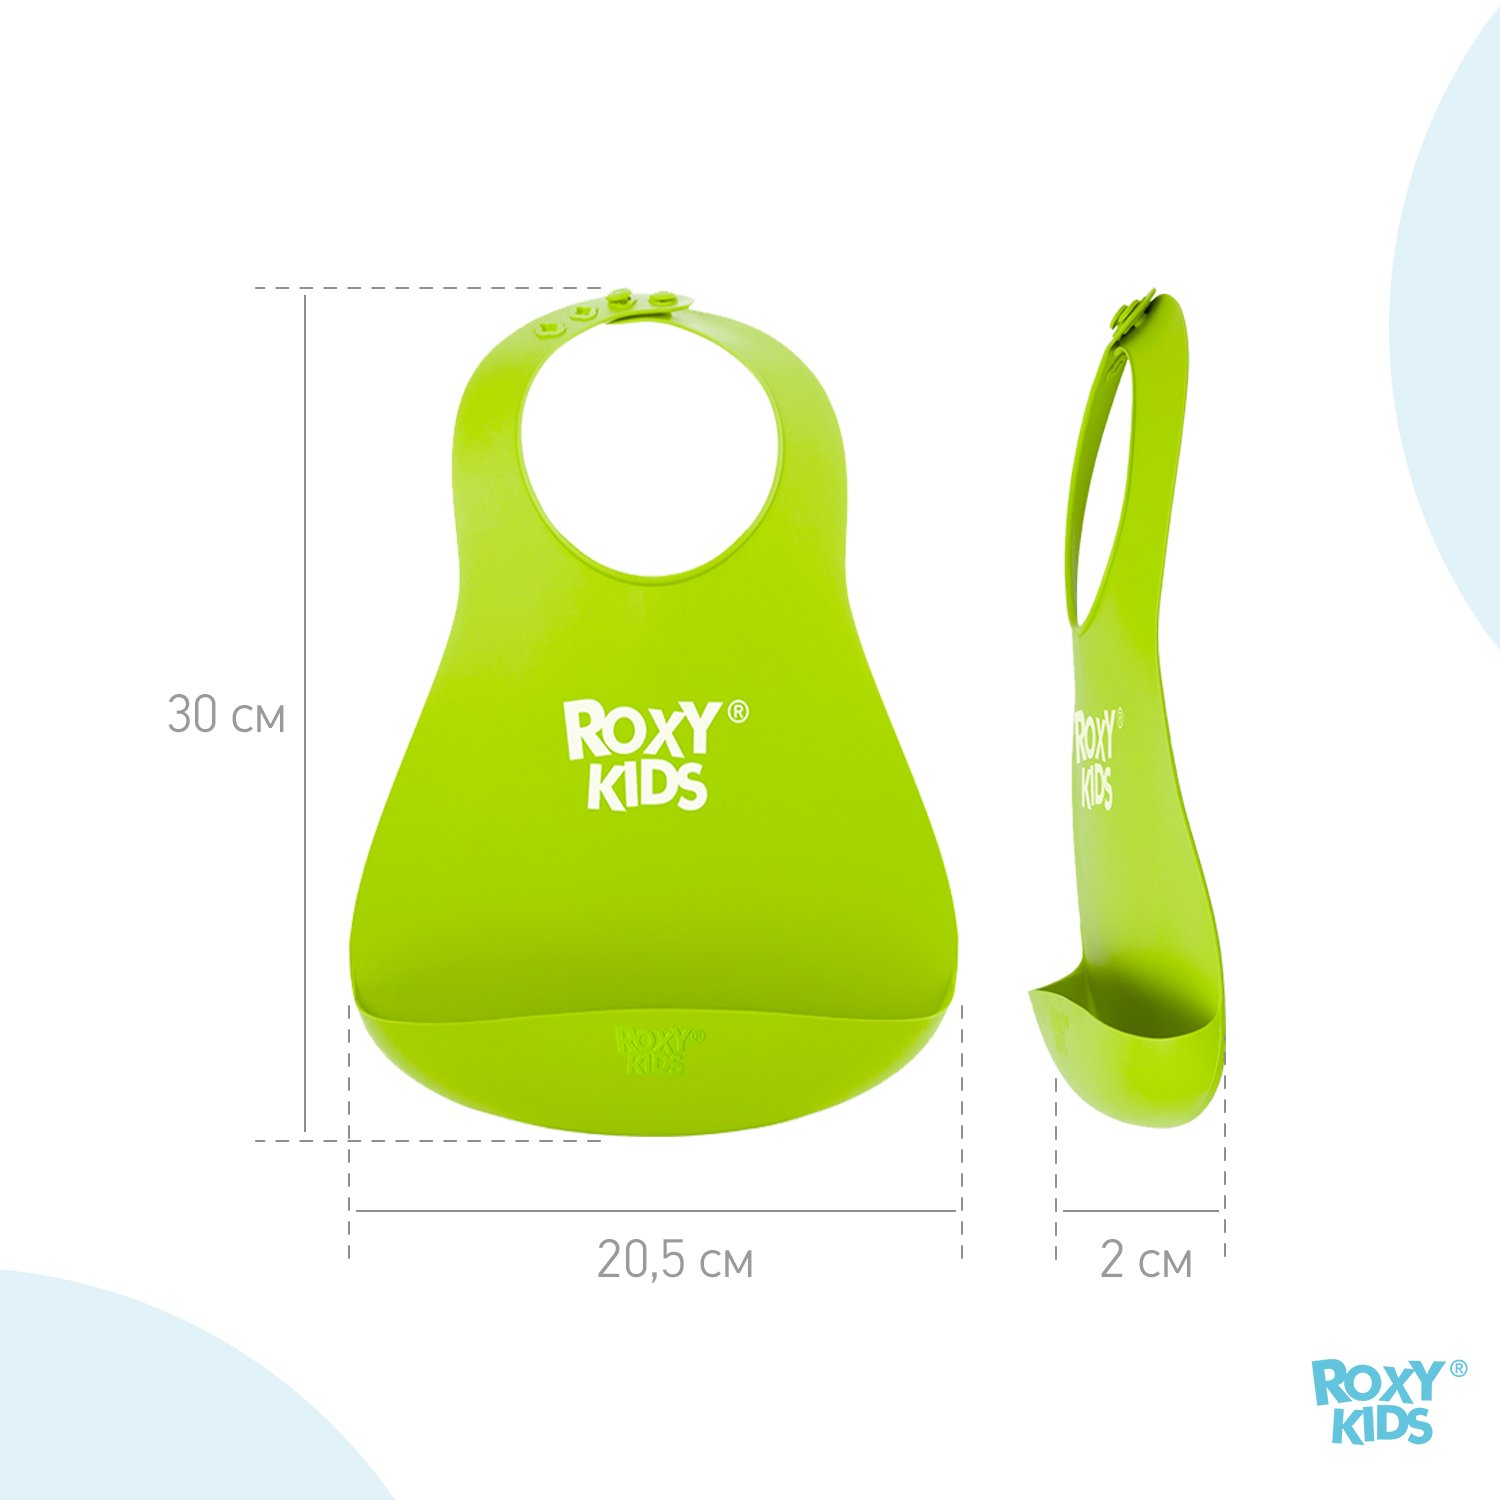 Нагрудник ROXY-KIDS для кормления мягкий с кармашком и застежкой цвет зеленый - фото 9